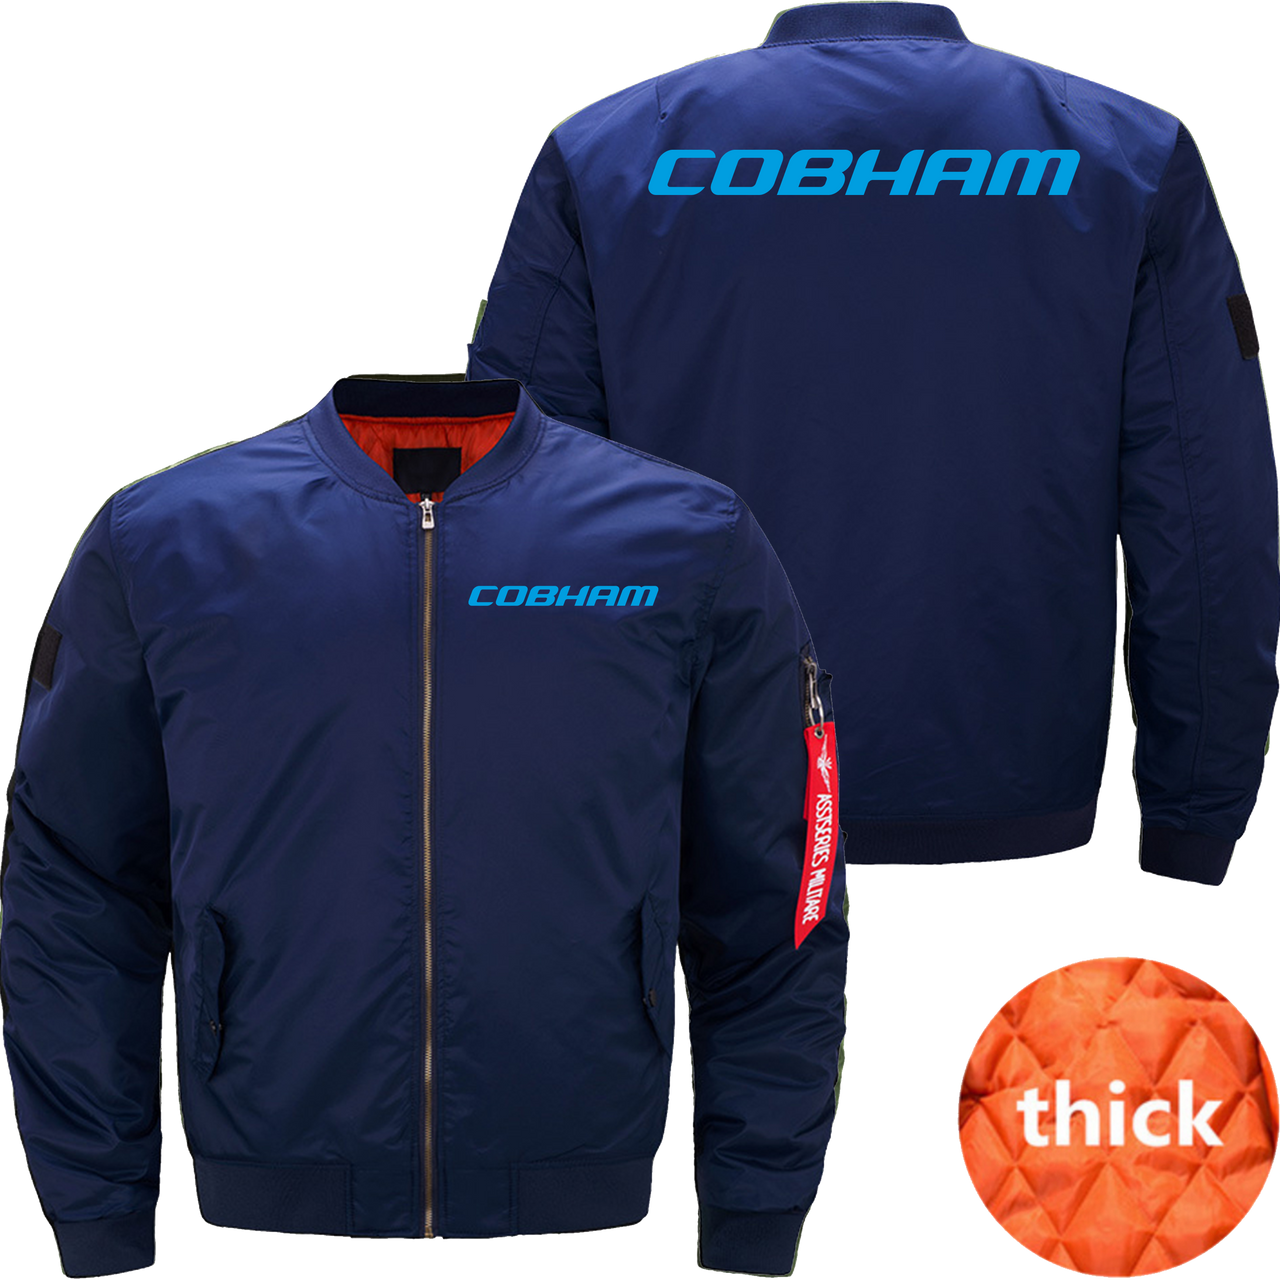 Cobham Jacket